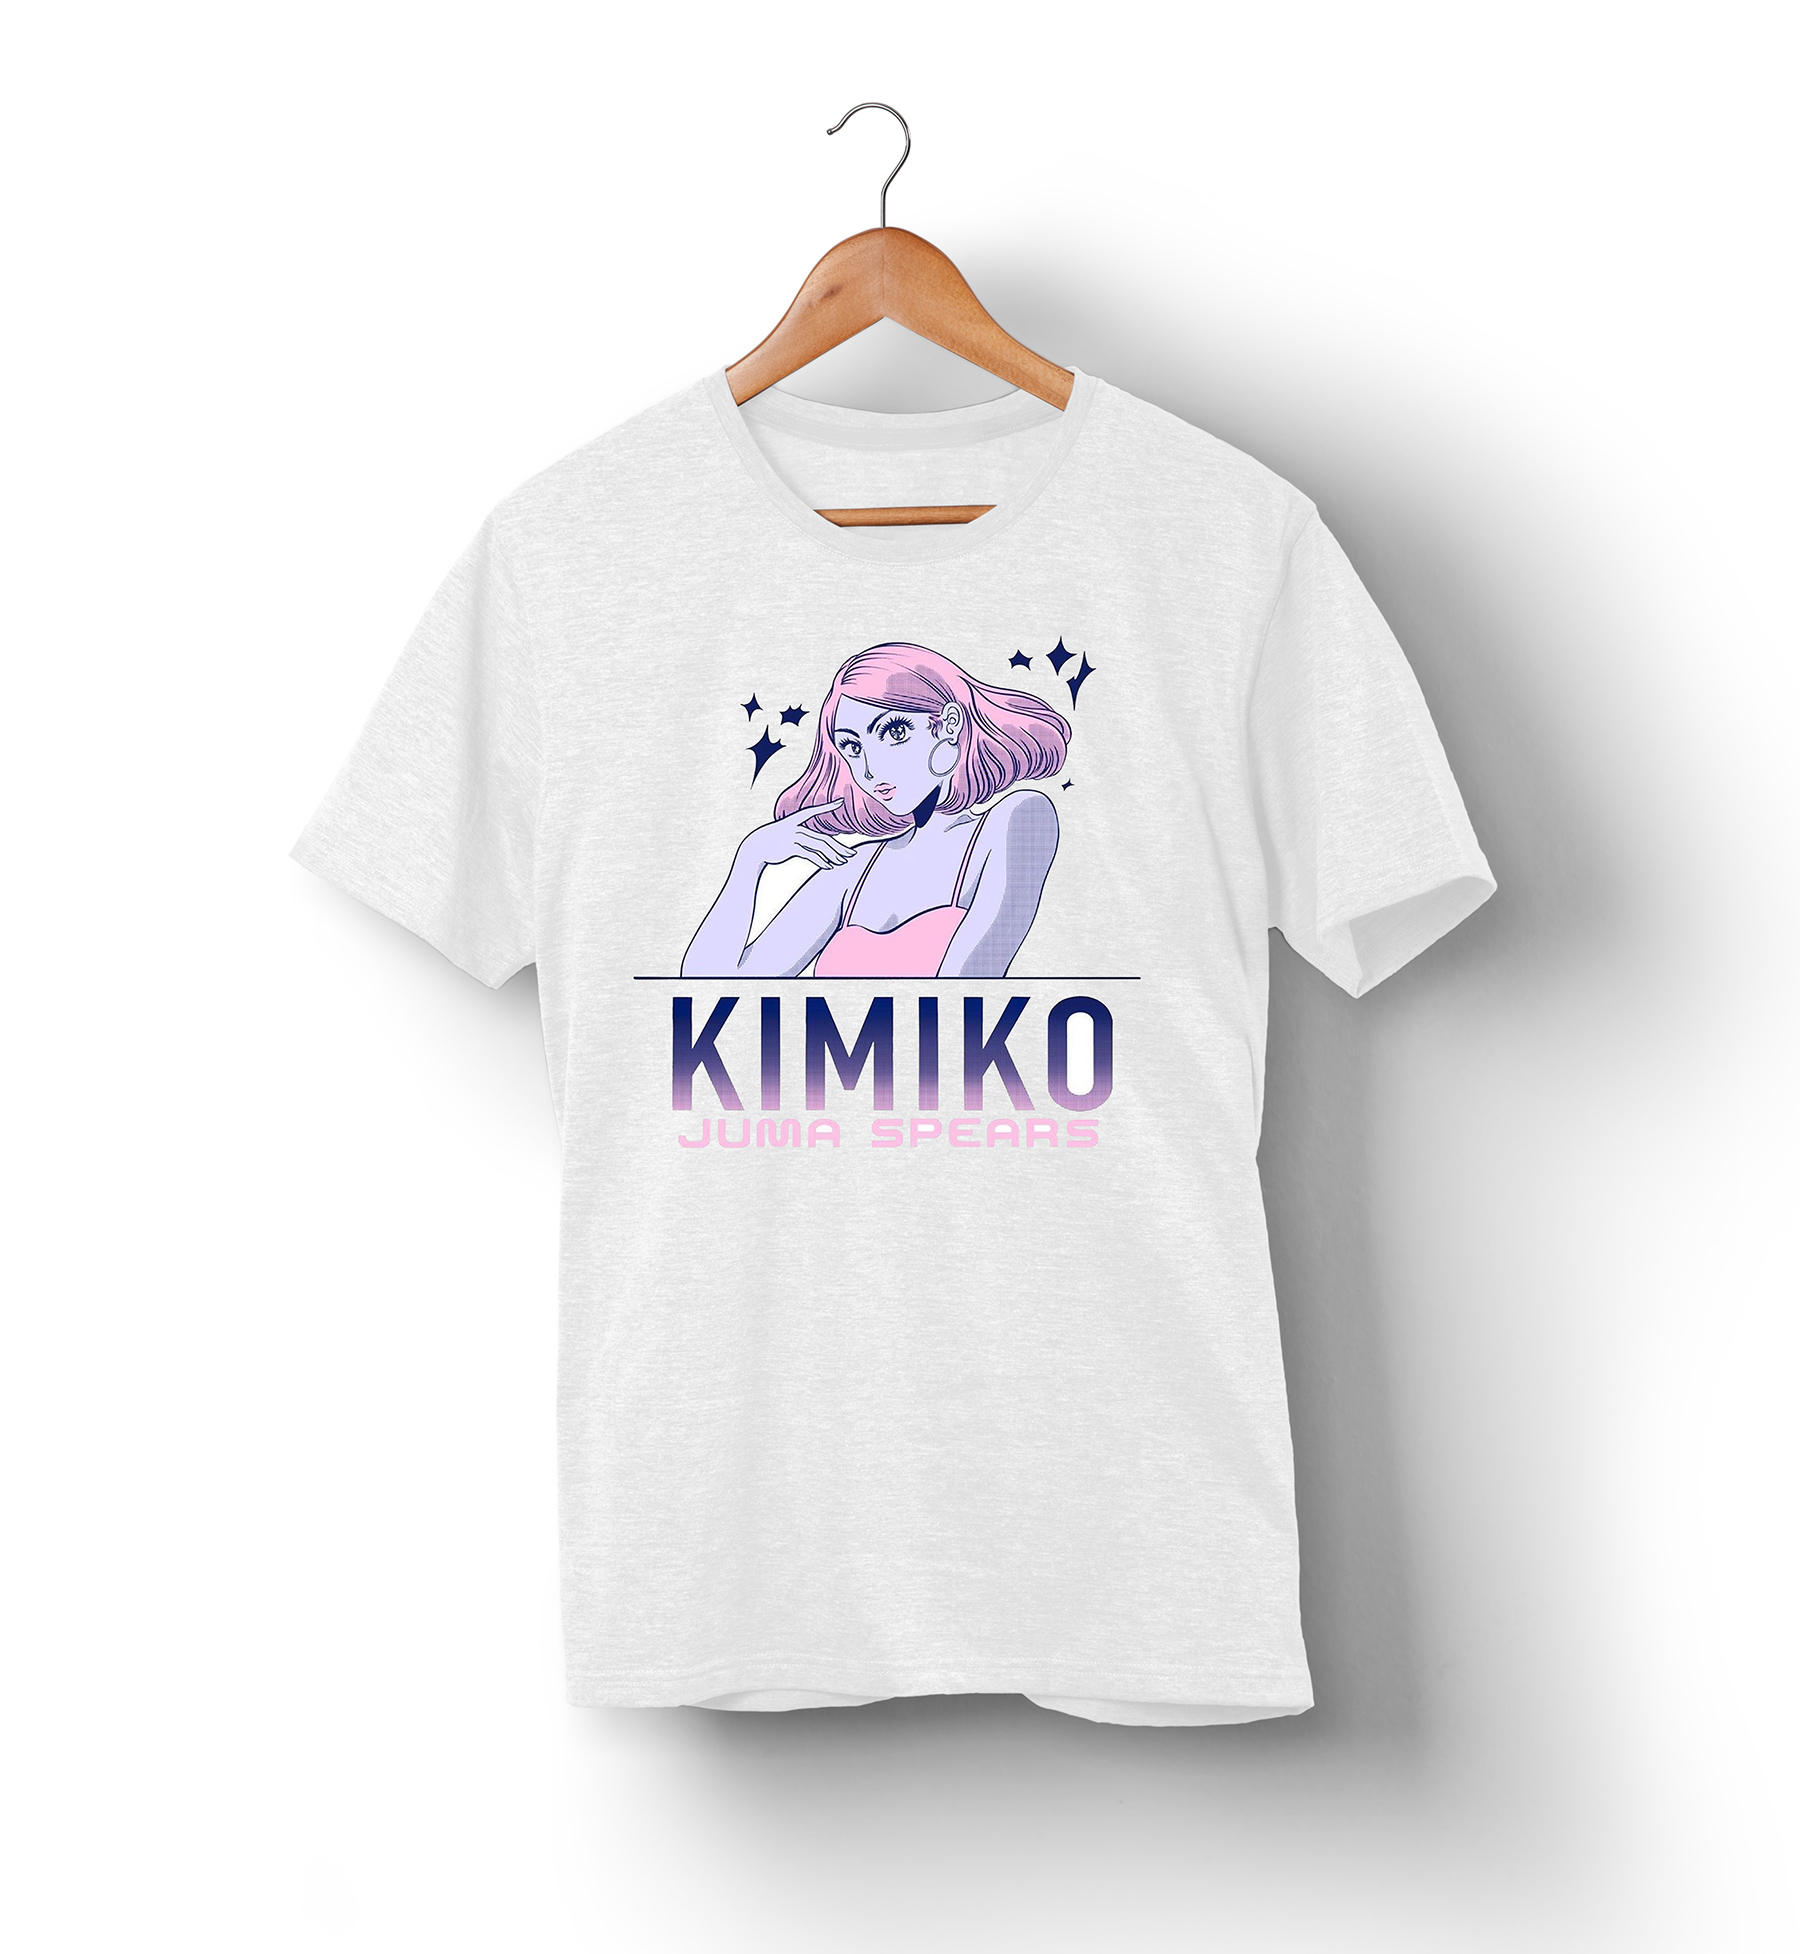 Kimiko